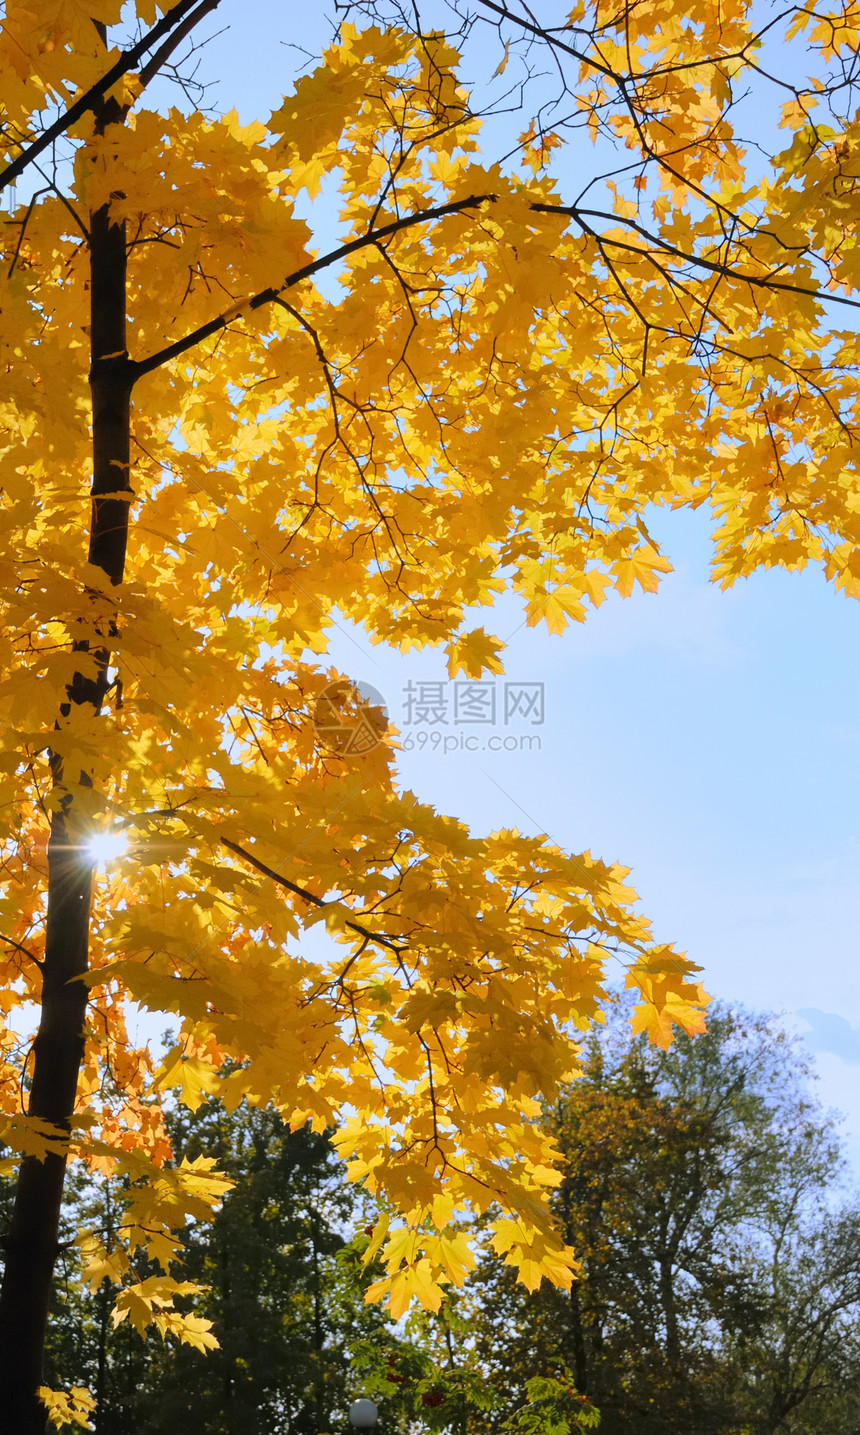 太阳日 在城市公园中植树金子红色黄色橙子天空蓝色公园树叶叶子森林图片